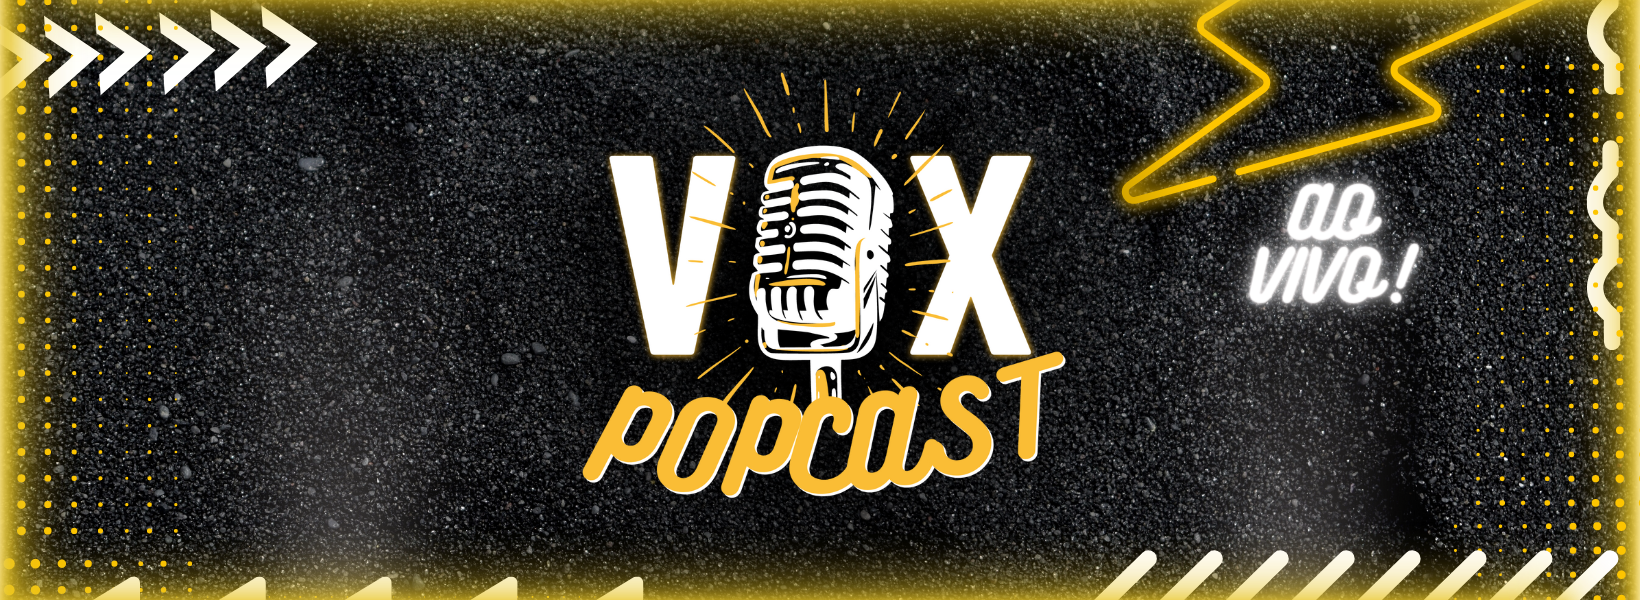 Vox Popcast